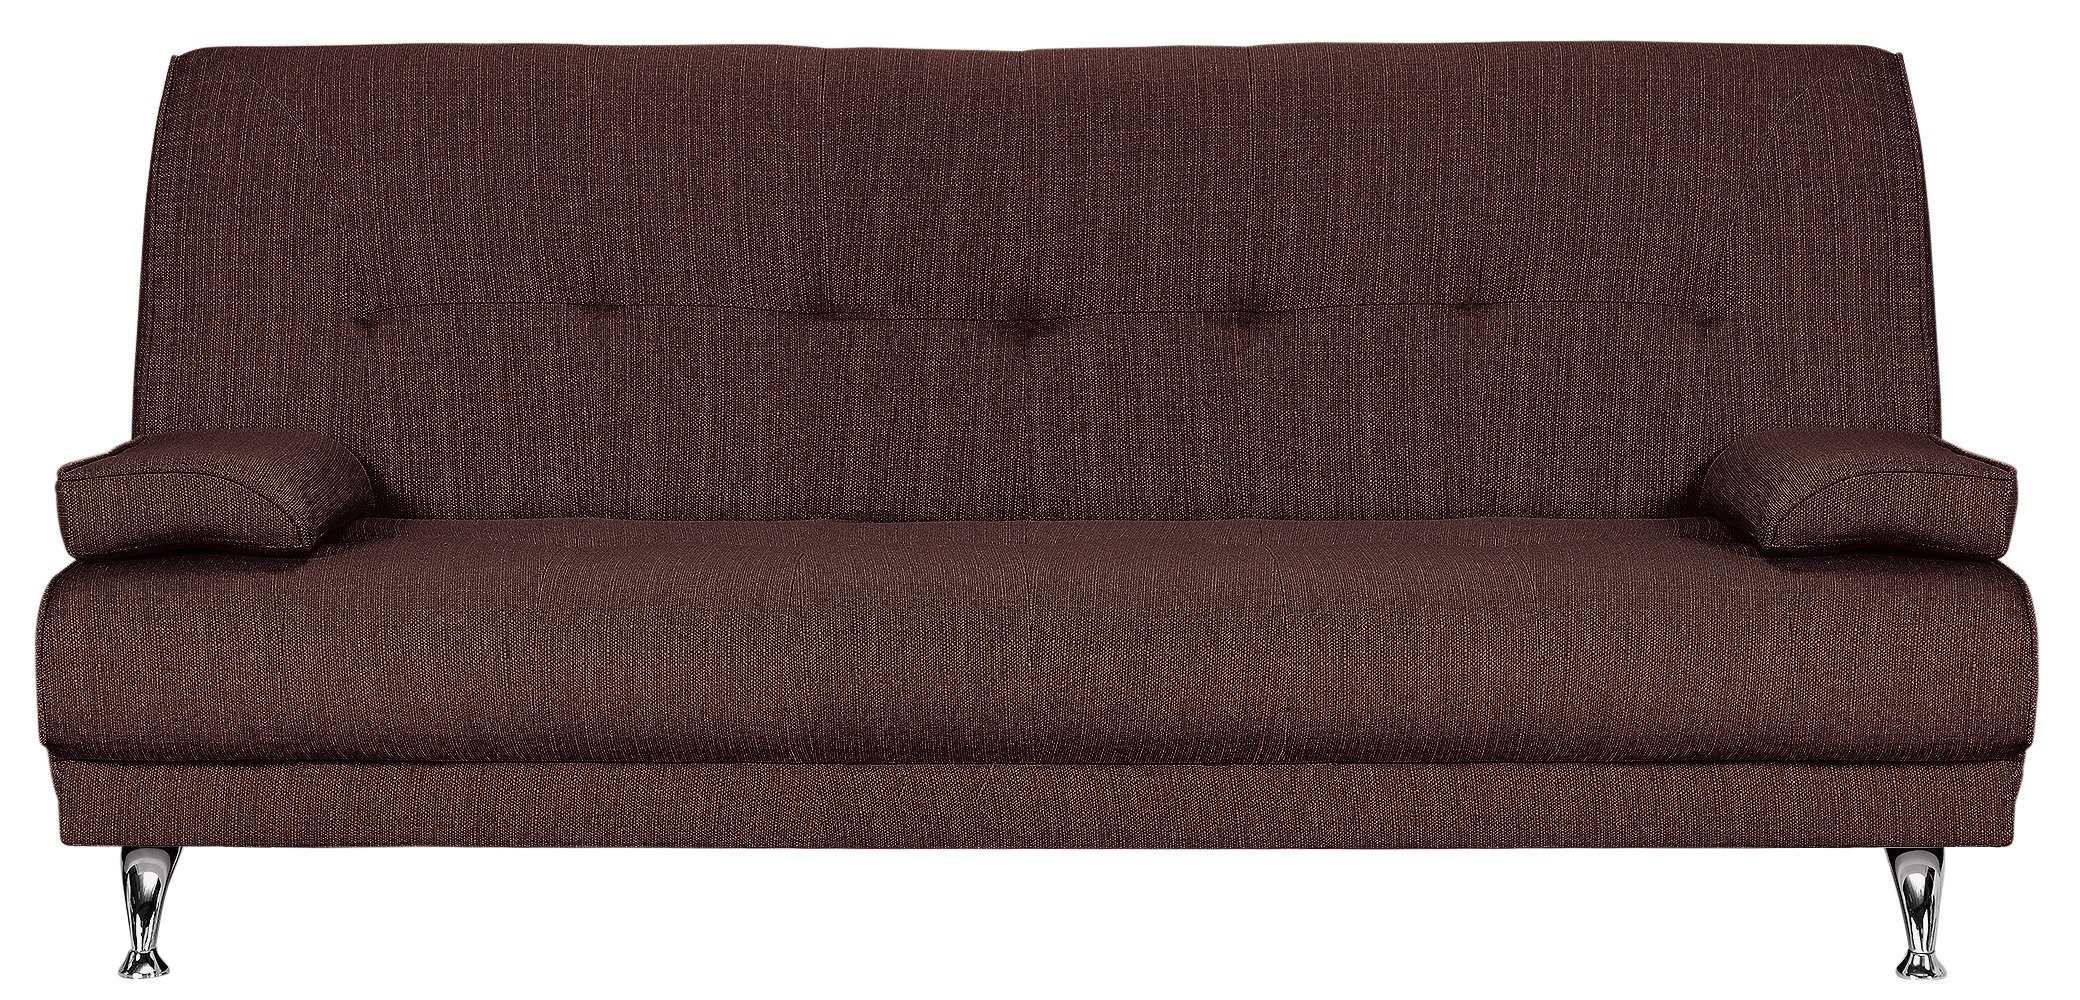 adjustable clic clac sofa bed